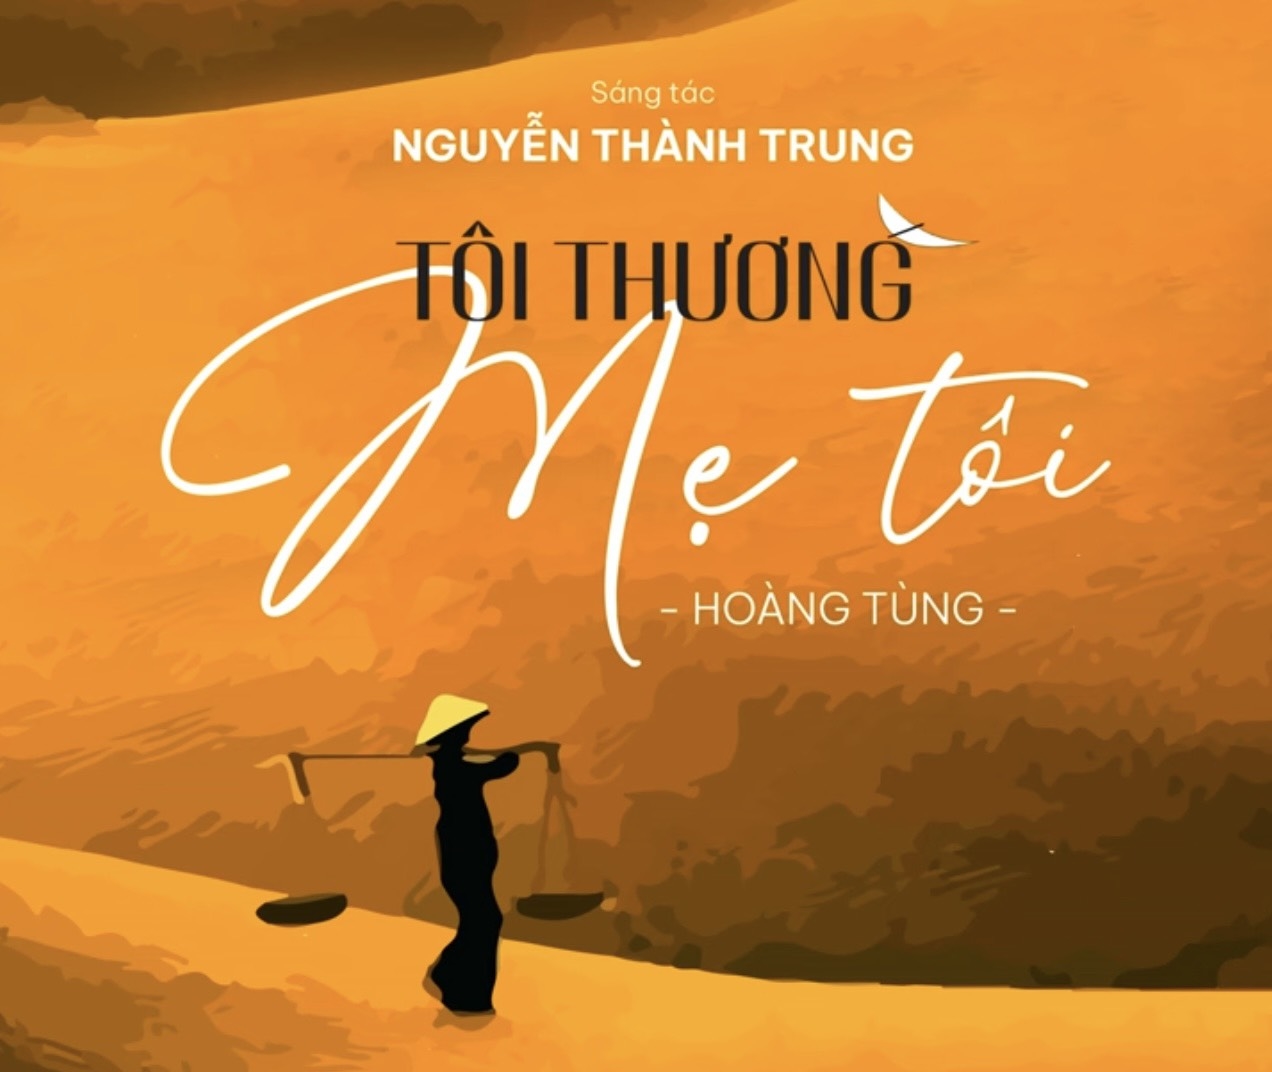 Bìa ca khúc Tôi thương mẹ tôi - sáng tác của nhạc sĩ Nguyễn Thành Trung, do Nghệ sĩ ưu tú Hoàng Tùng thể hiện